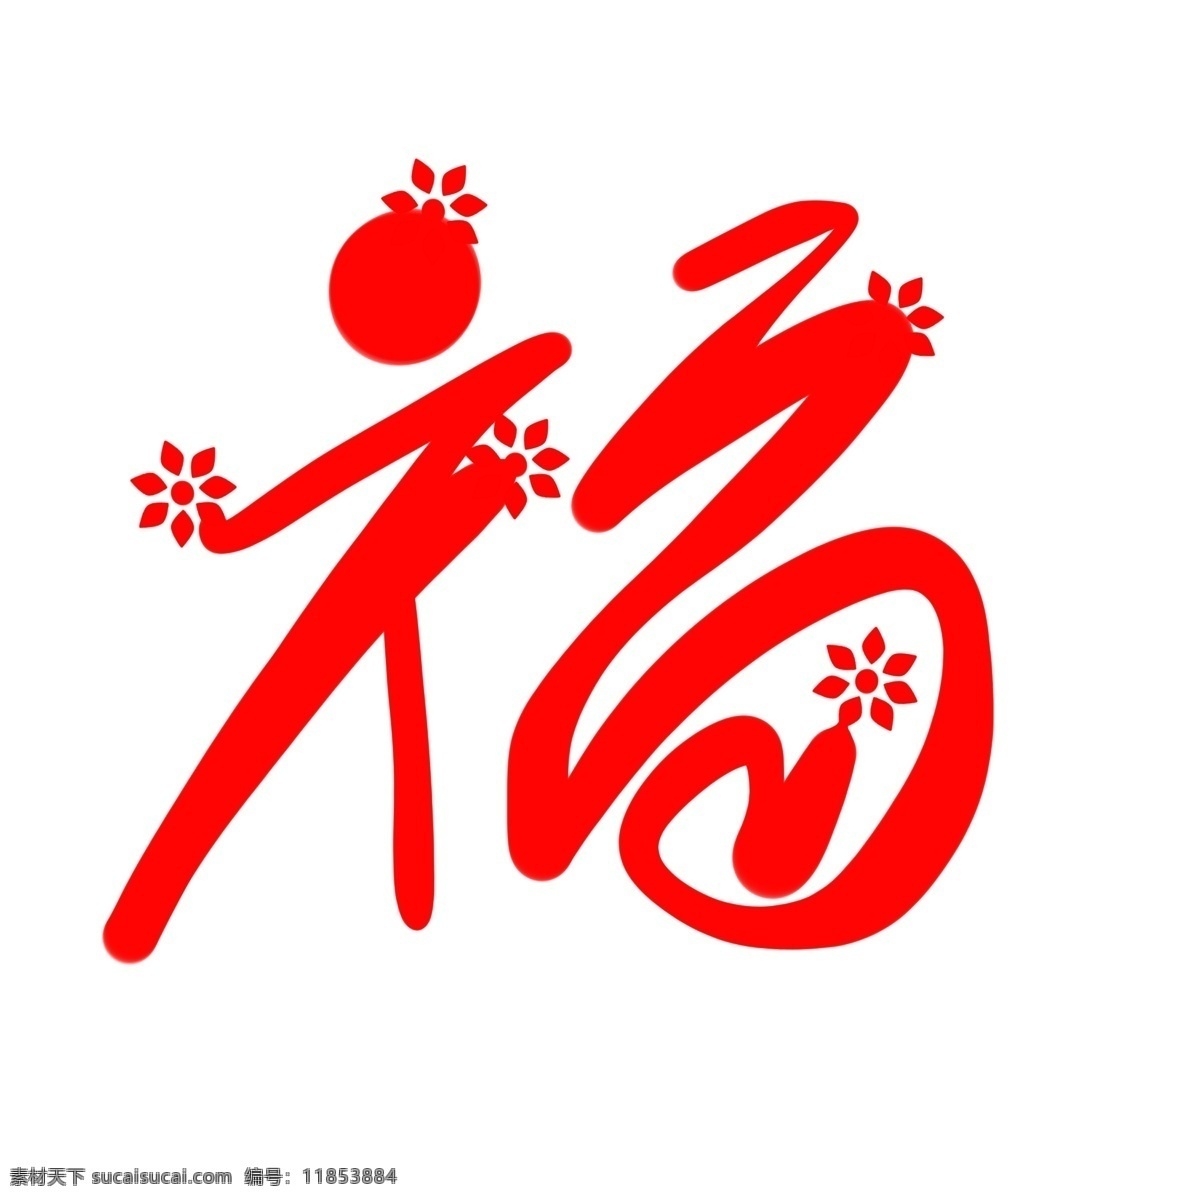 卡通 手绘 红色 花朵 飞舞 福字 文化 暖色 中国风 贴画